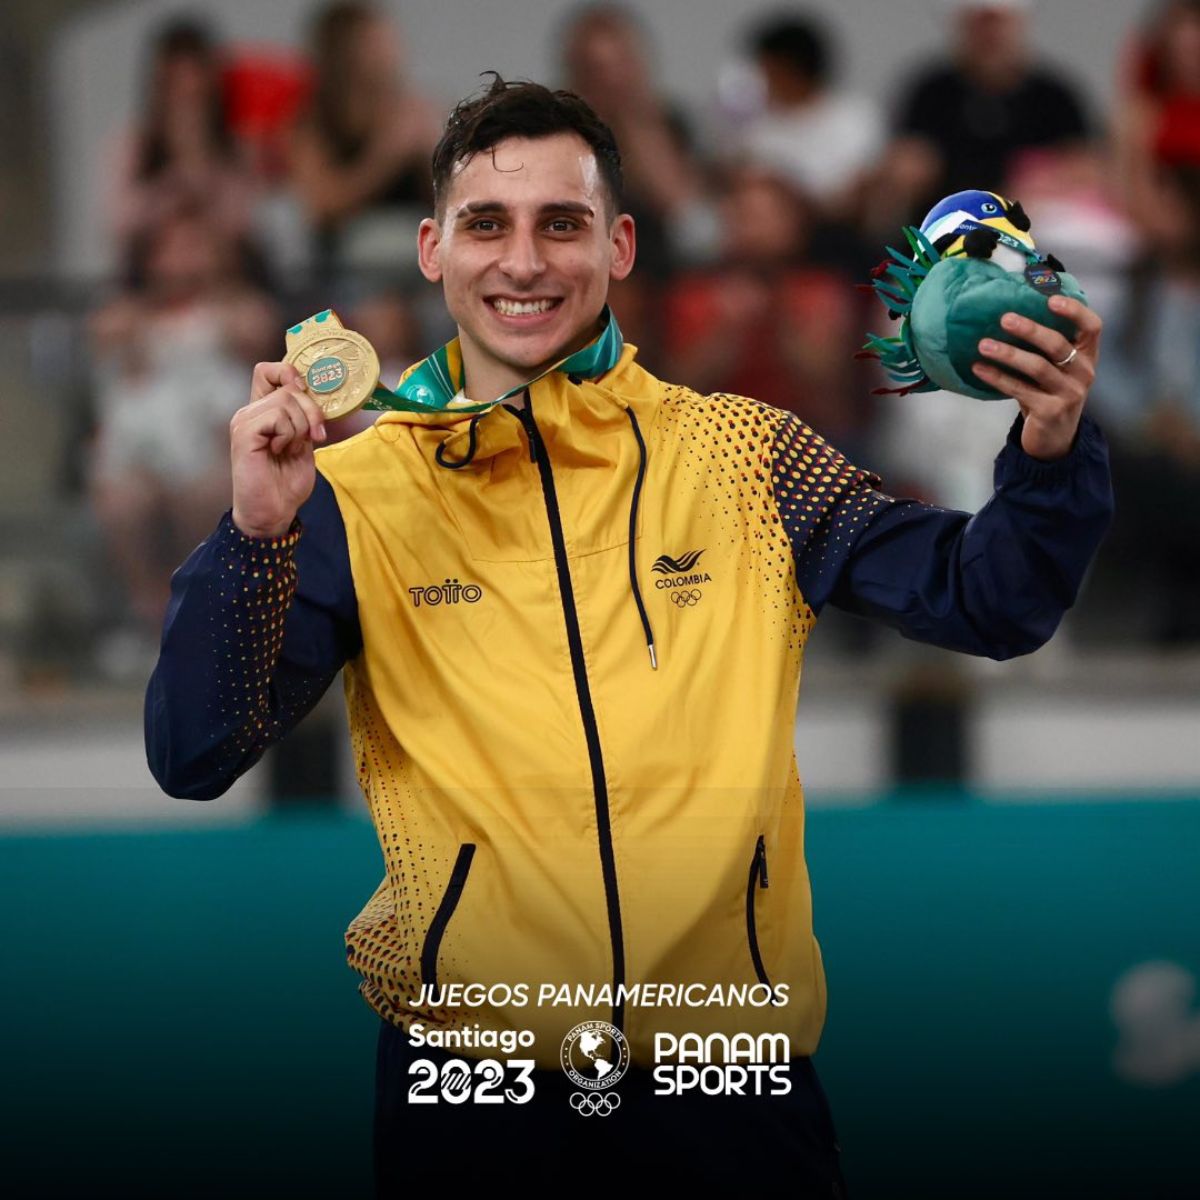 Ángel Hernández Panamericanos 2023 - La historia de Ángel Hernández, el español que representó a Colombia en el trampolín en París 2024